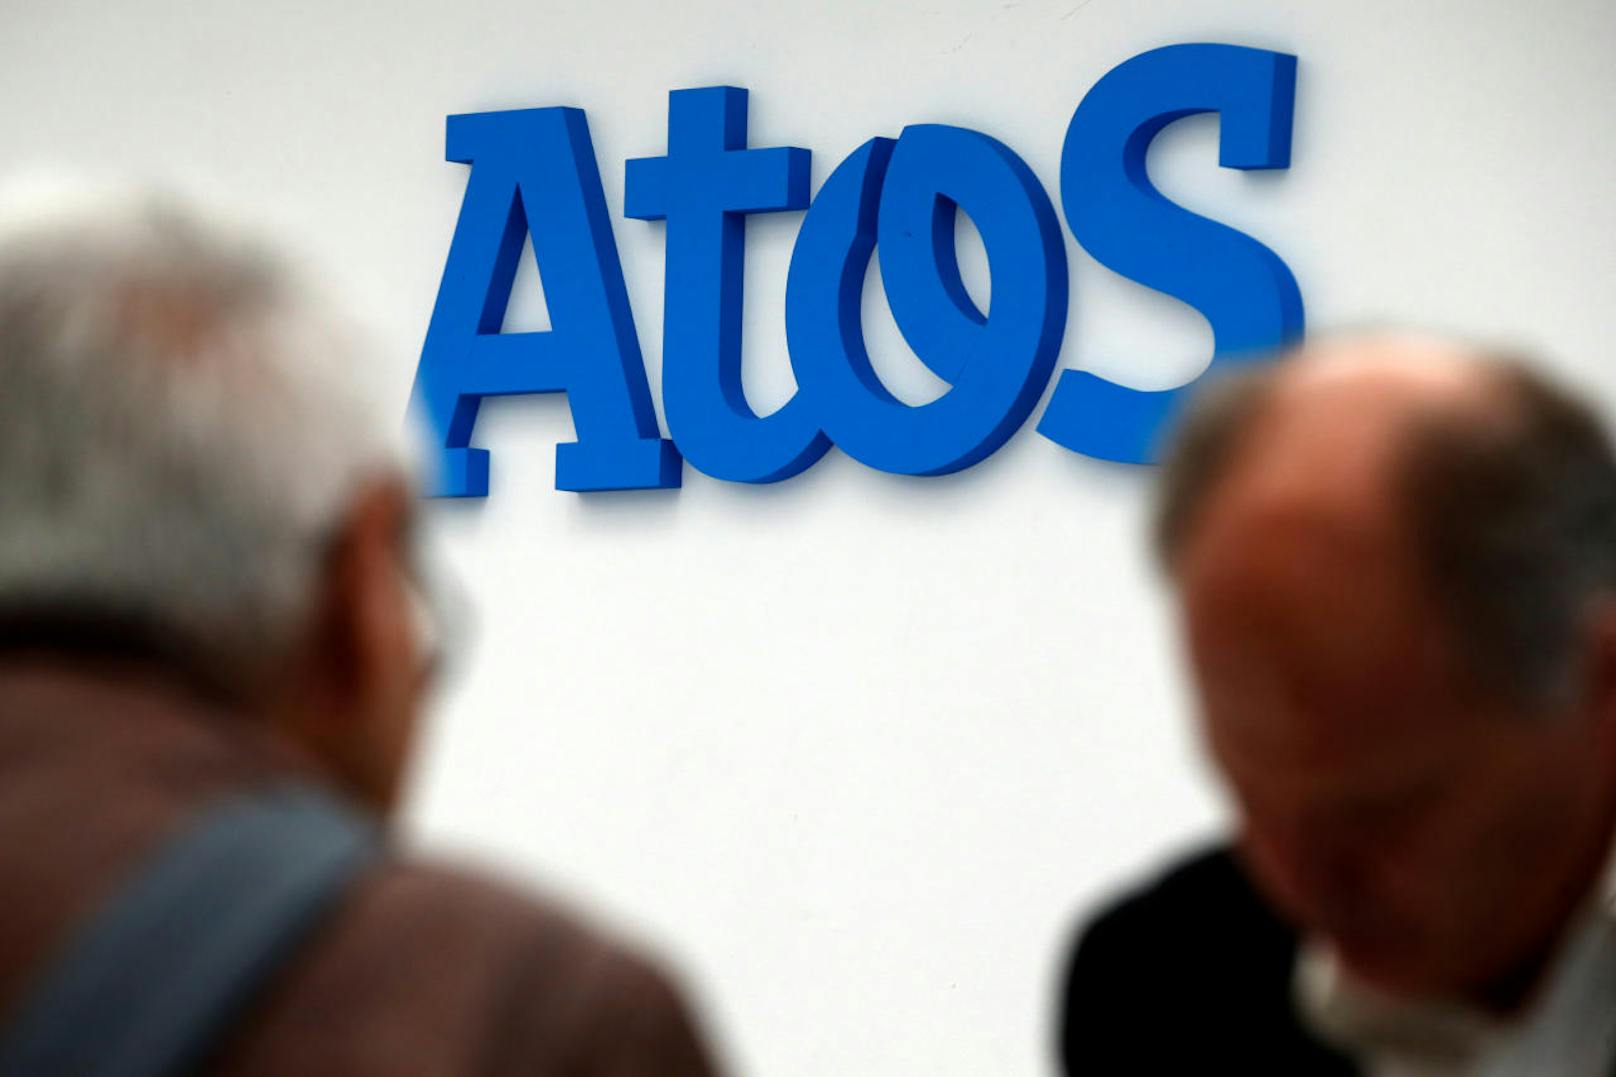 Atos verzehnfacht Supercomputing-Leistung für staatliche spanische Wetterbehörde AEMET.